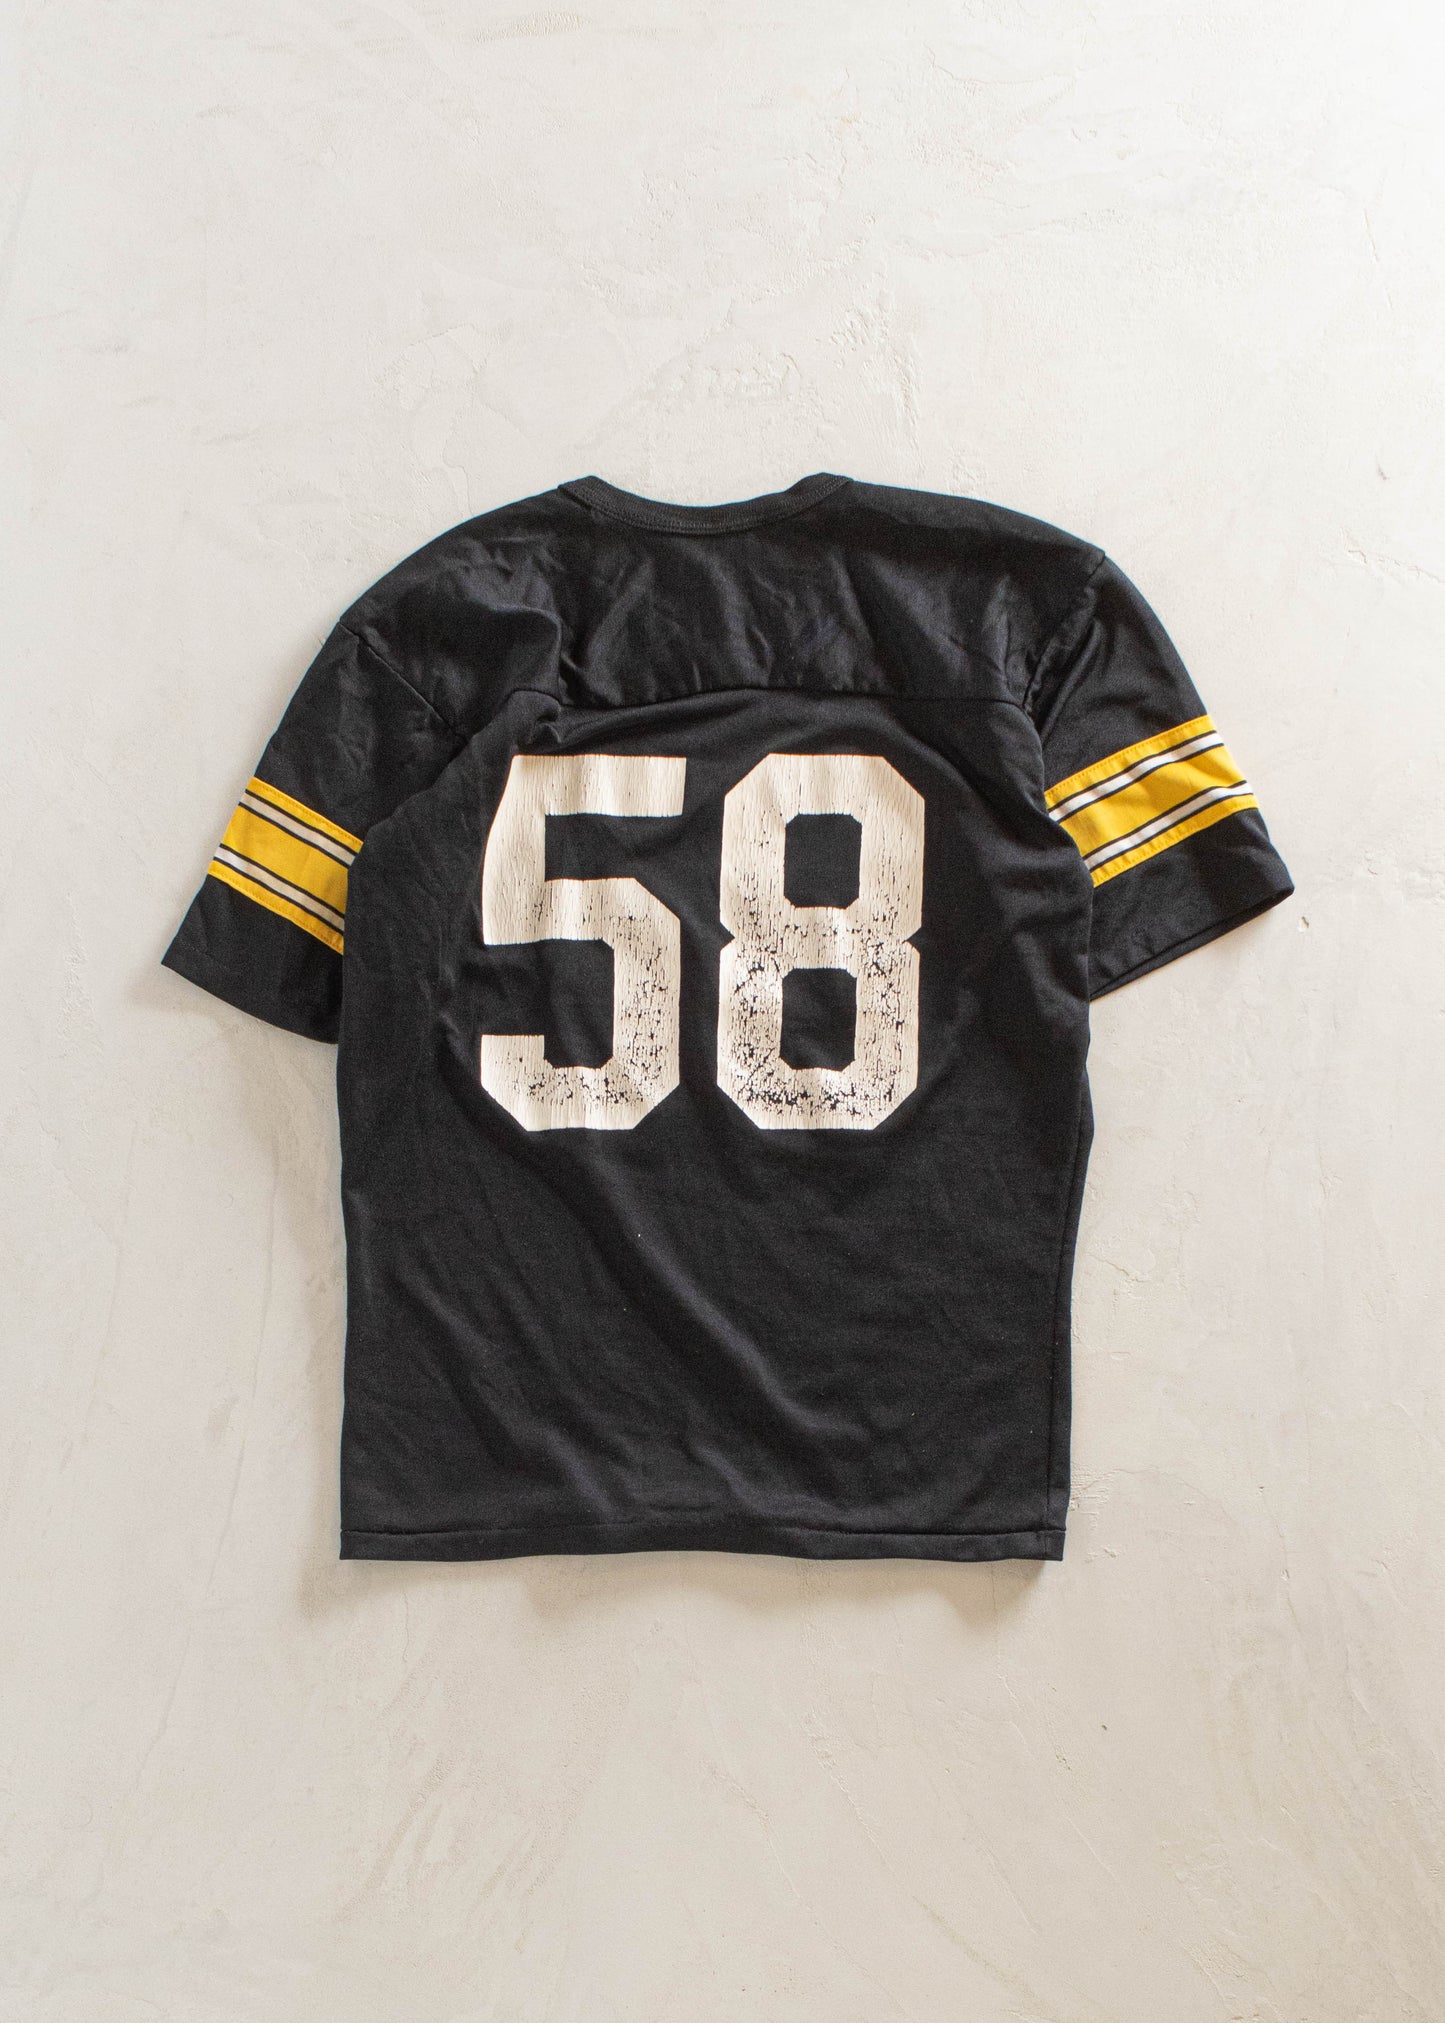 1980s Rawlings Steelers Sport Jersey Size M/L